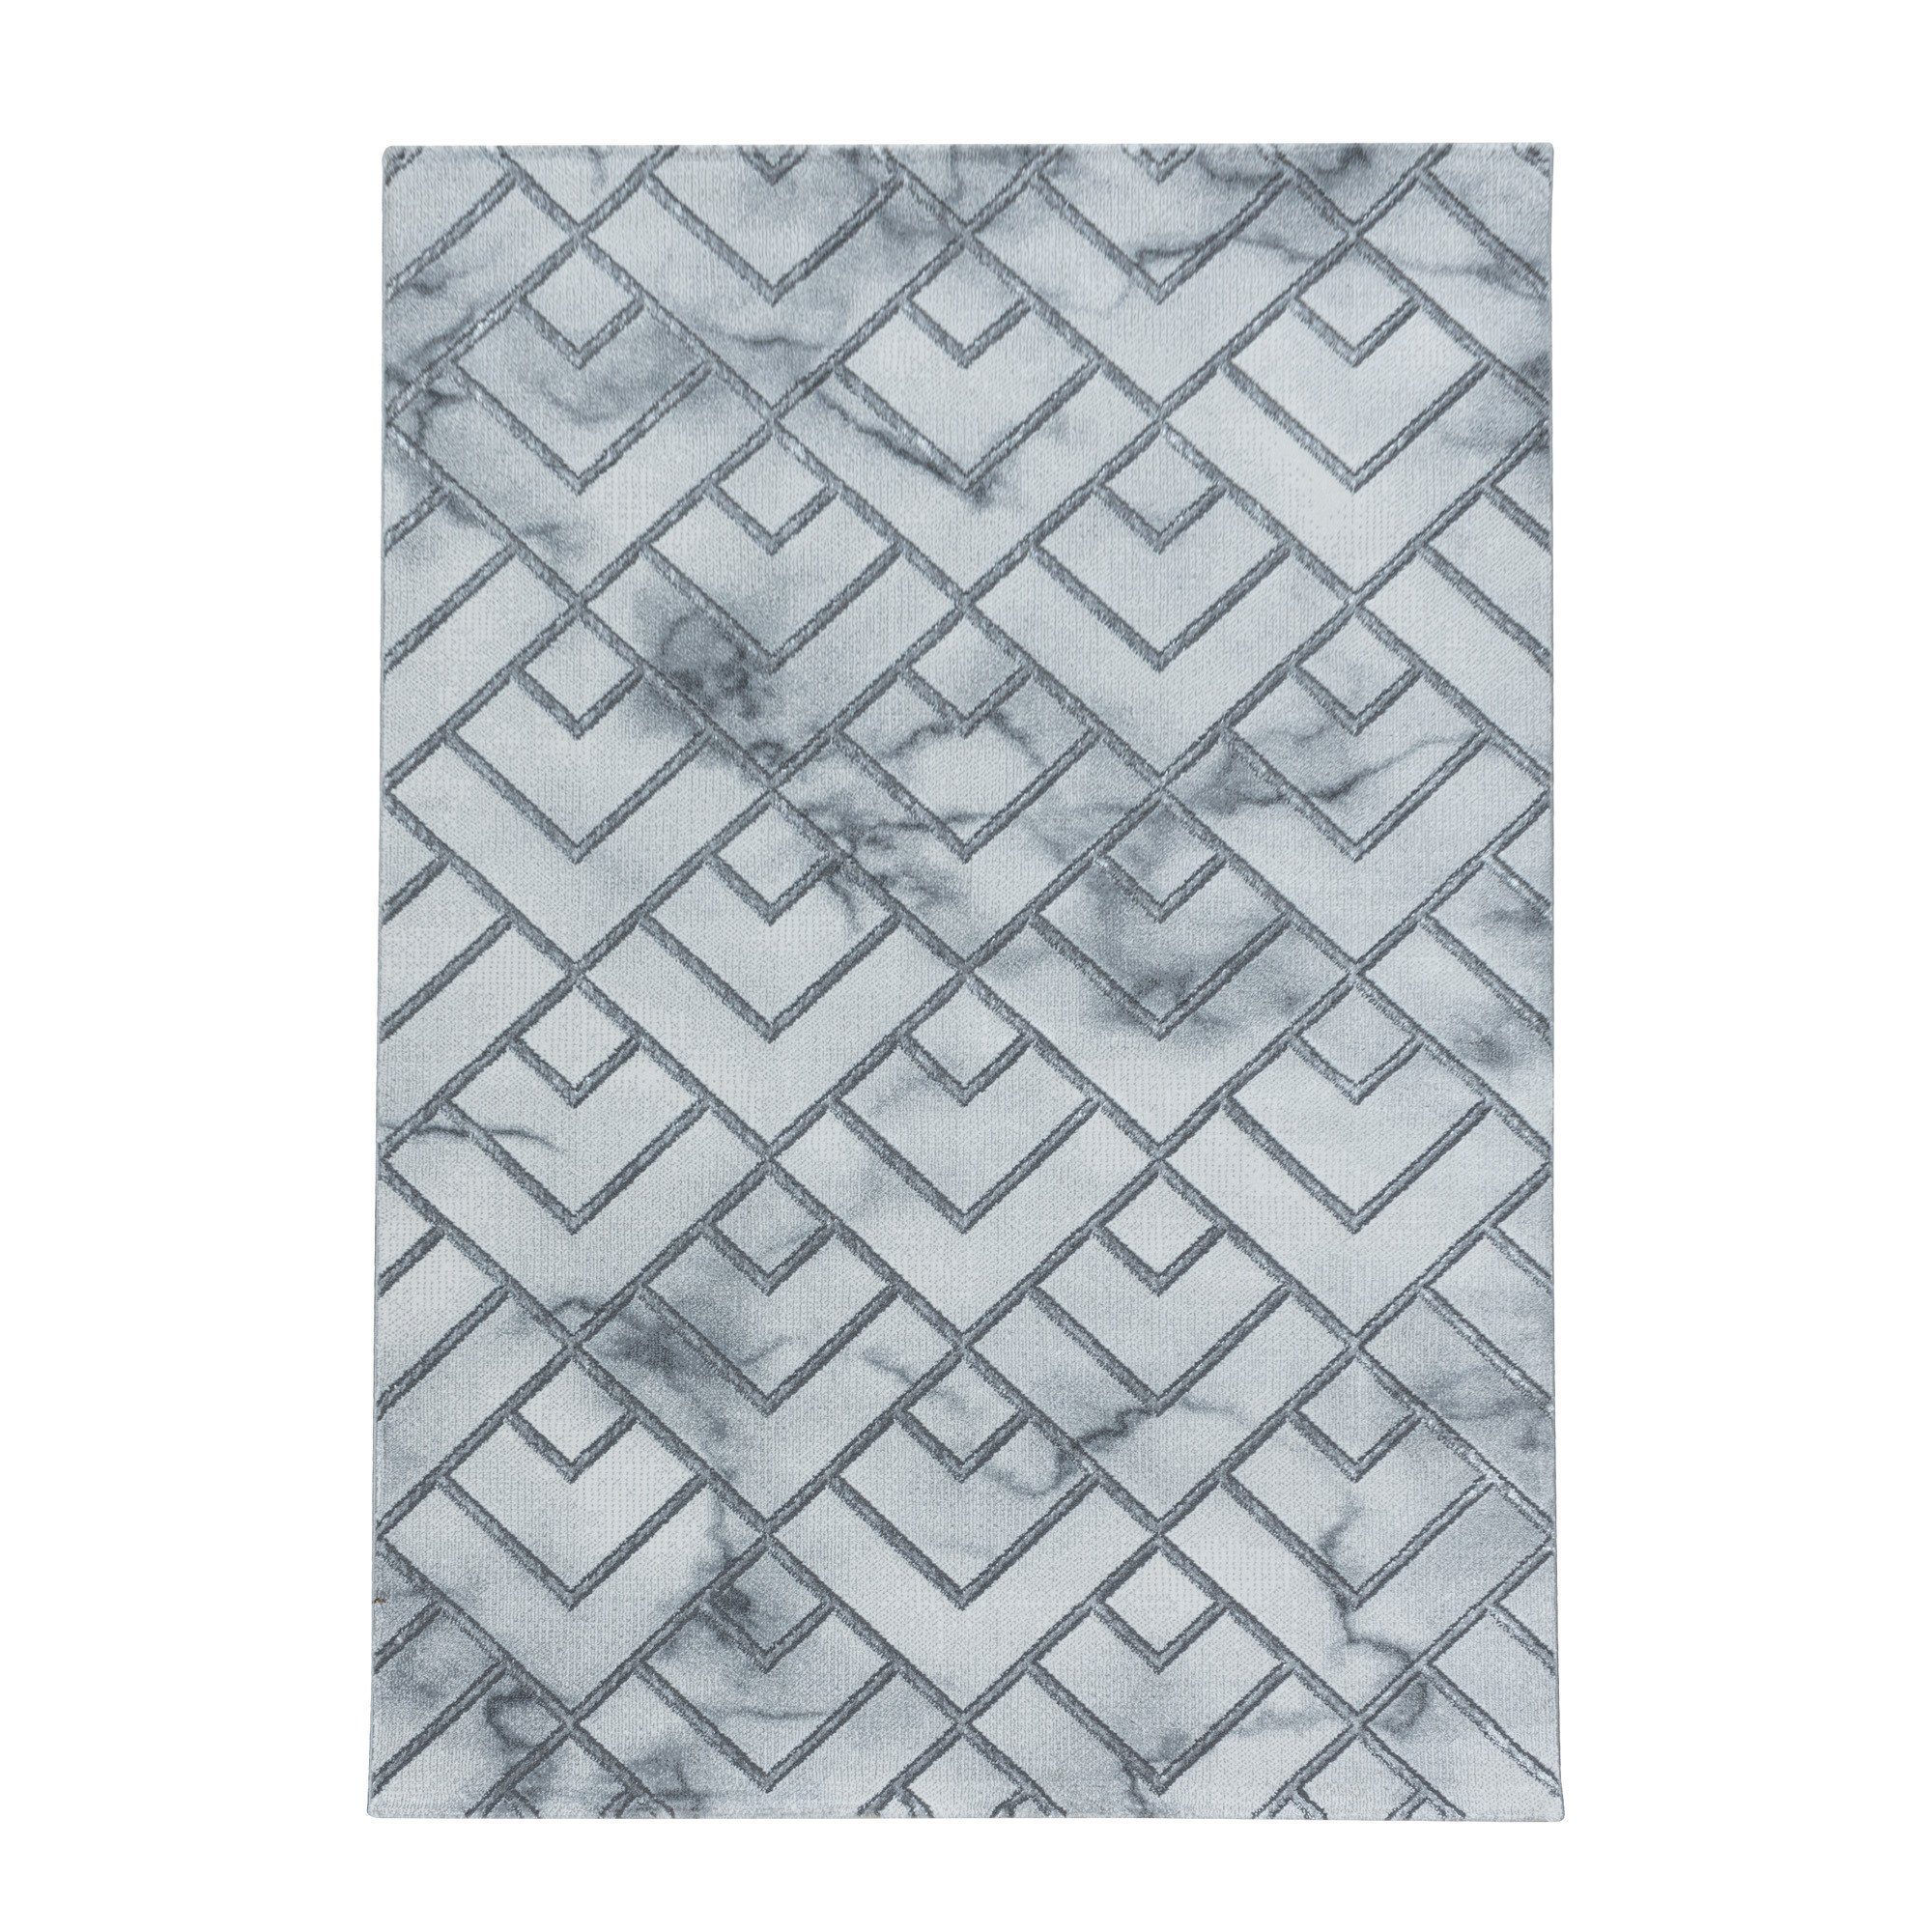 Marmor Flachflorteppich Kurzflorteppich Wohnzimmer, Designteppich Silber Schlafzimmer Miovani